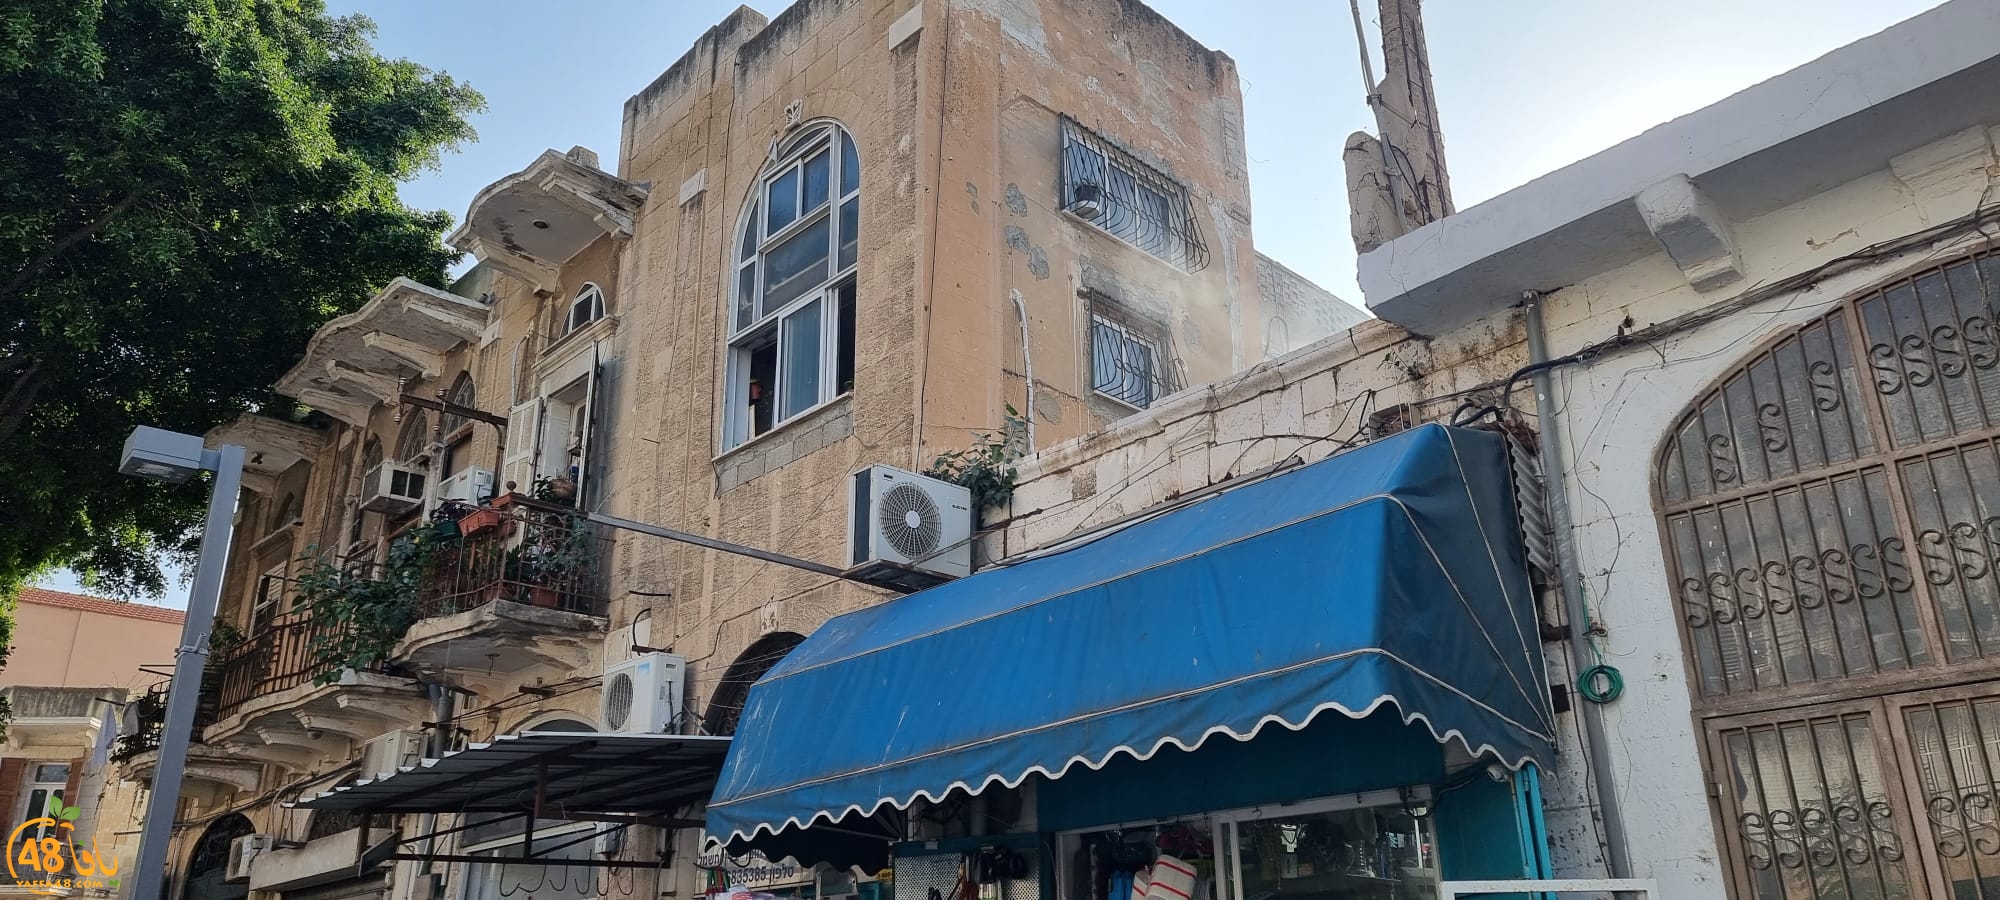 حريق داخل شقة سكنية بمدينة يافا دون وقوع إصابات